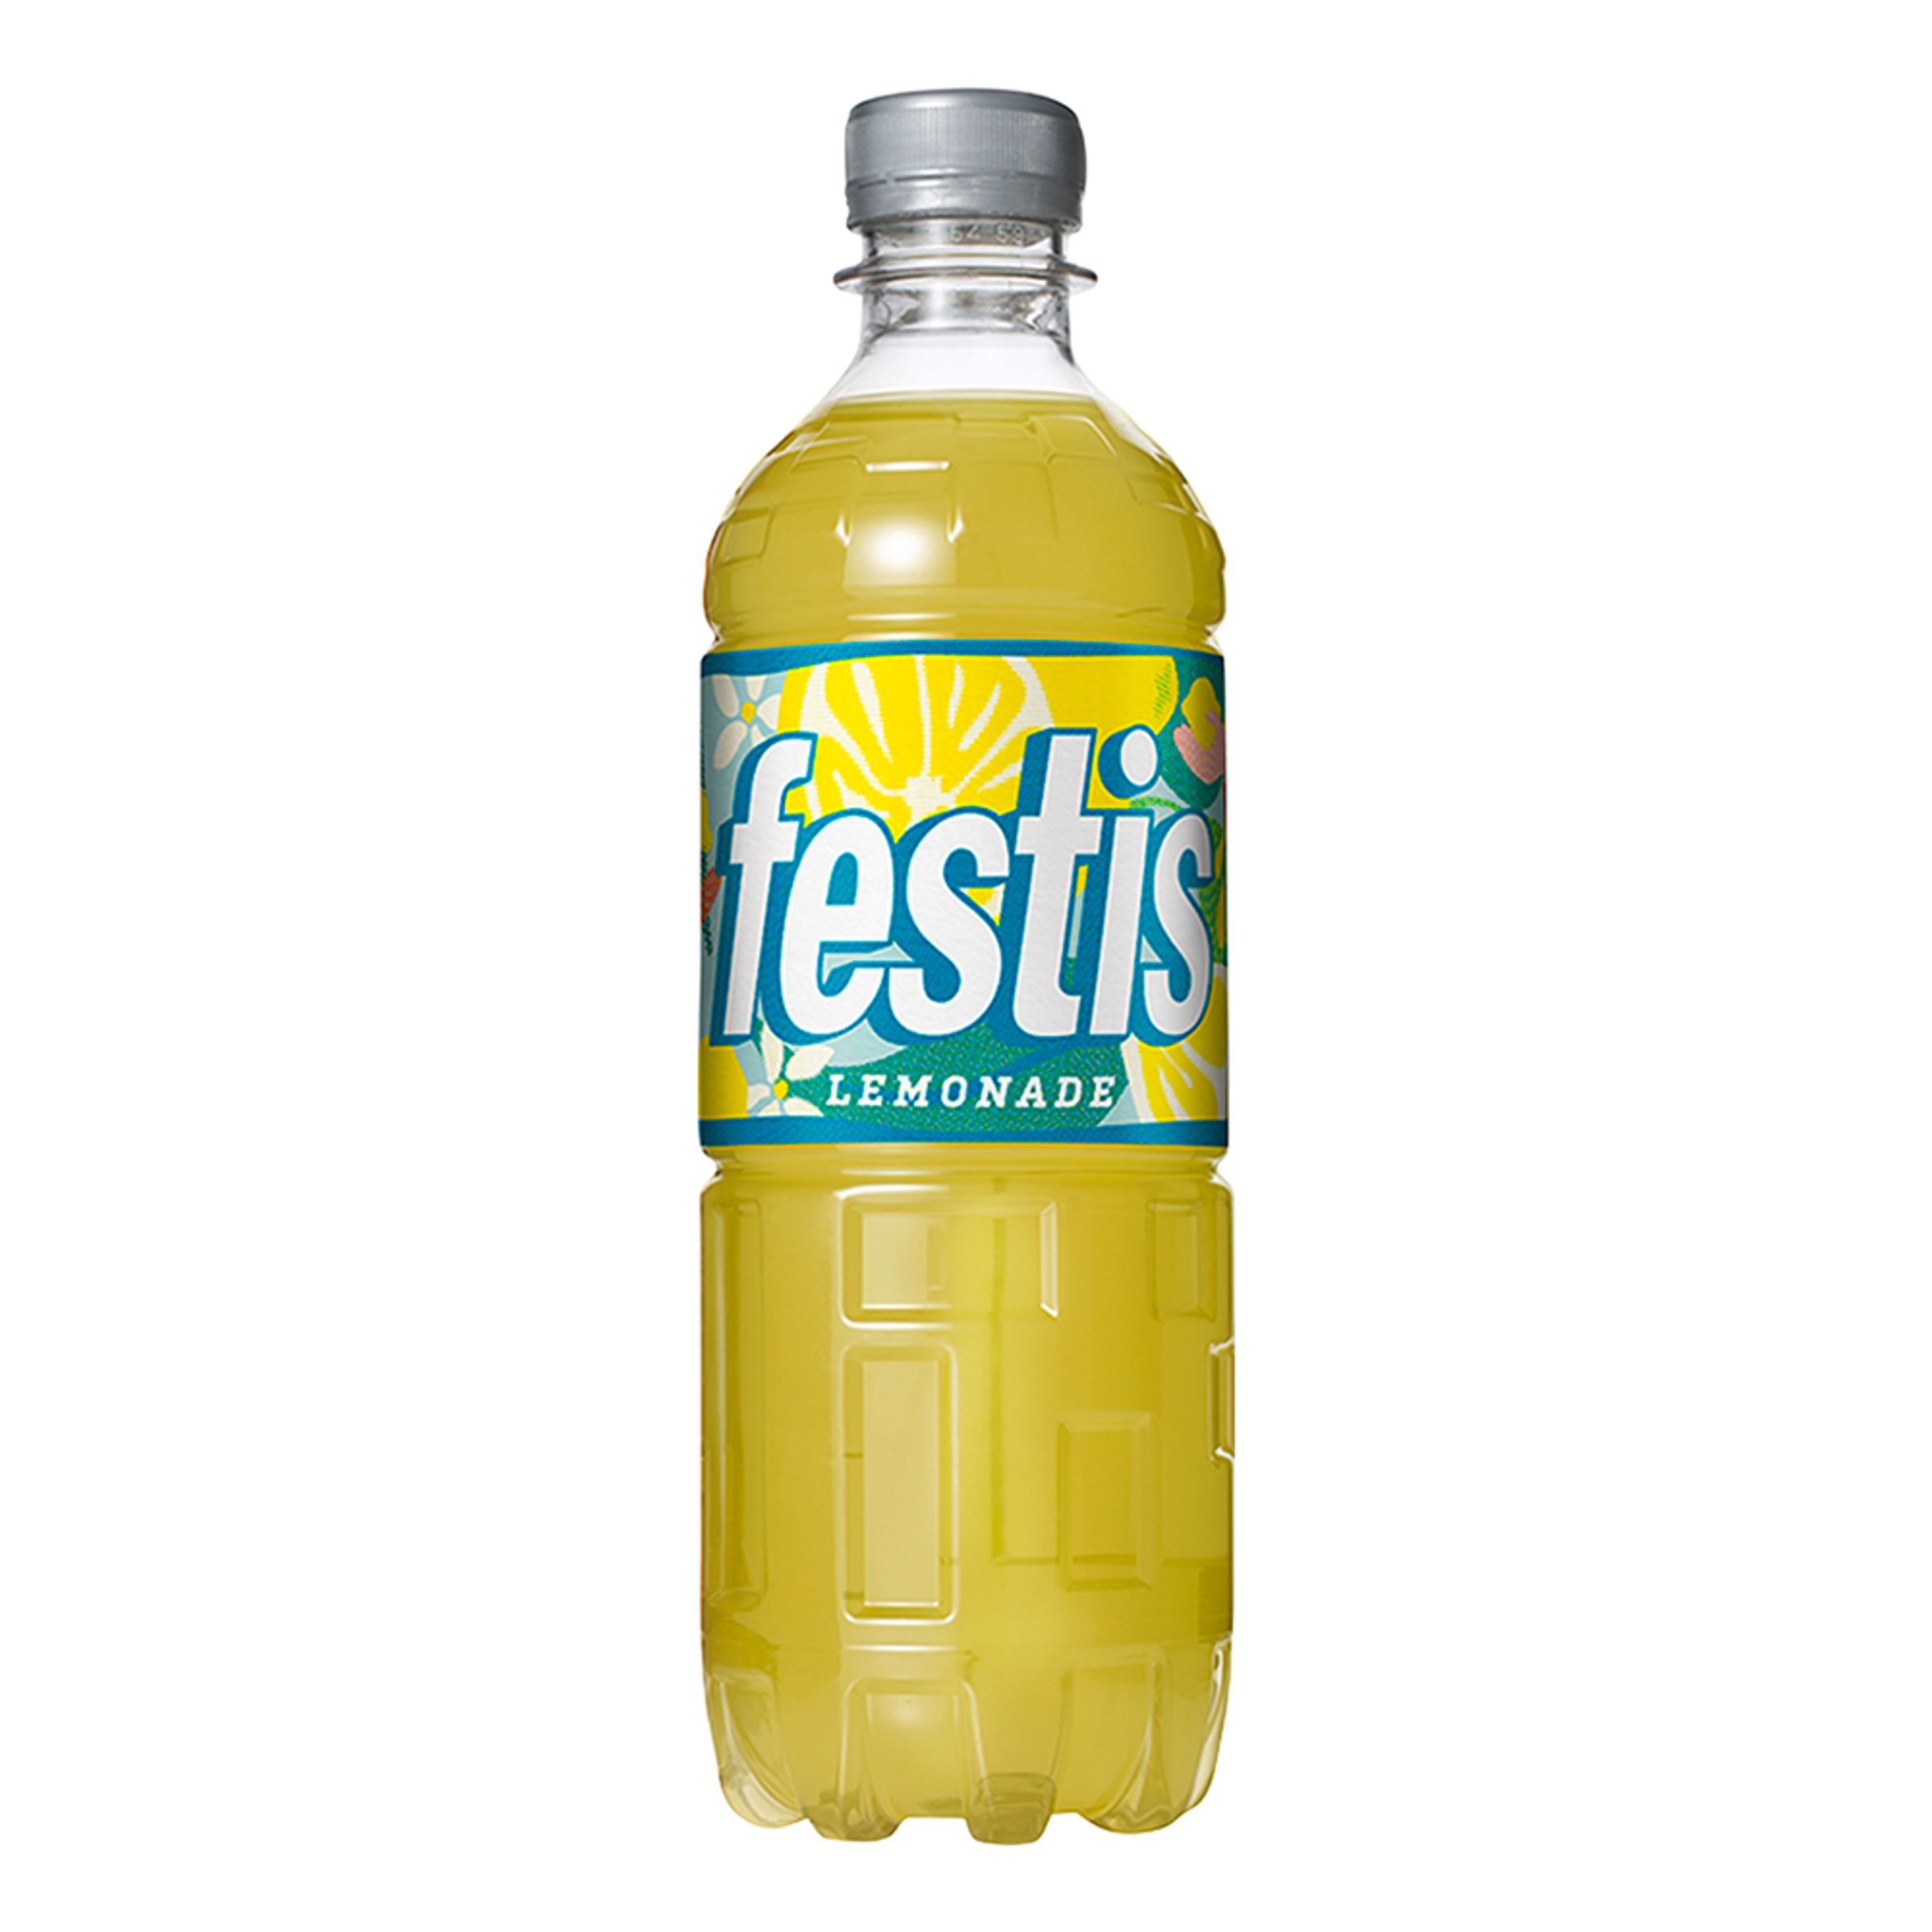 Festis Lemonade - 50 cl